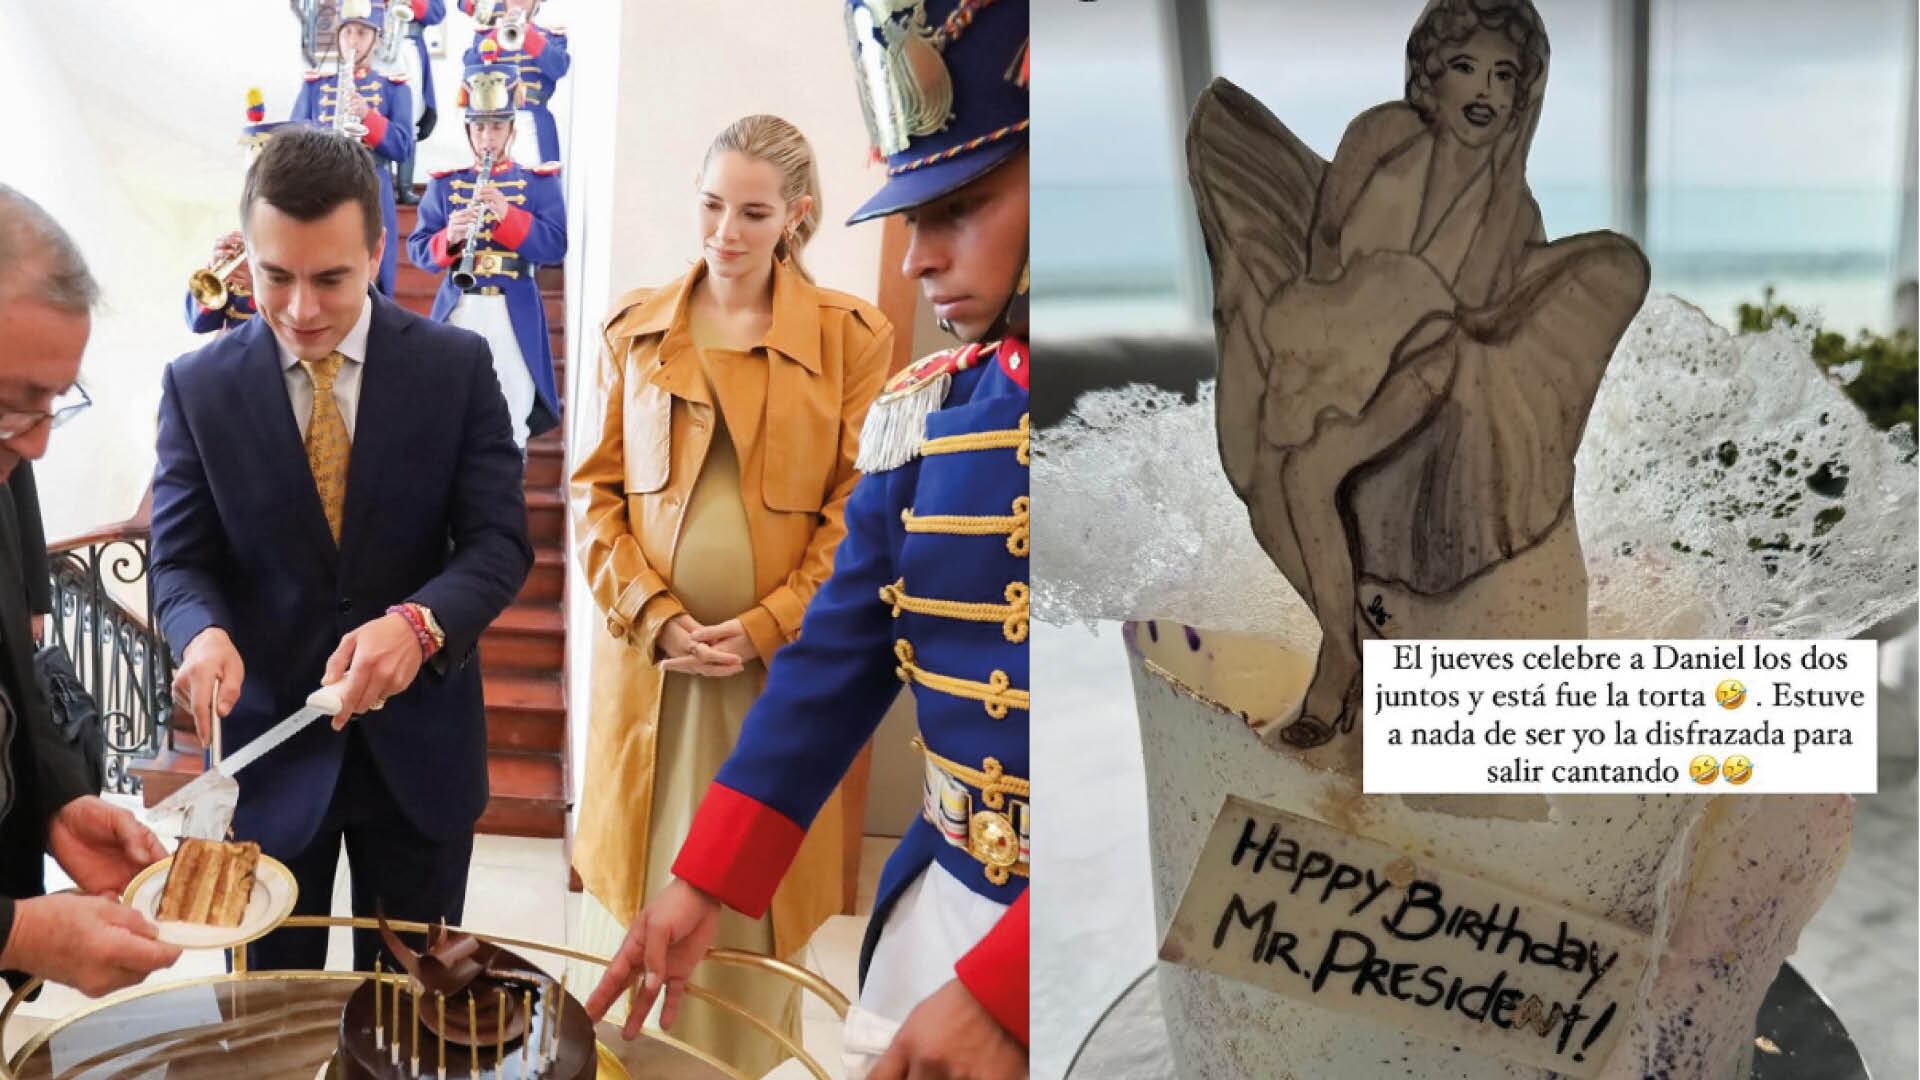 Lavinia Valbonesi festejó el cumpleaños del presidente Noboa al estilo de Marilyn Monroe